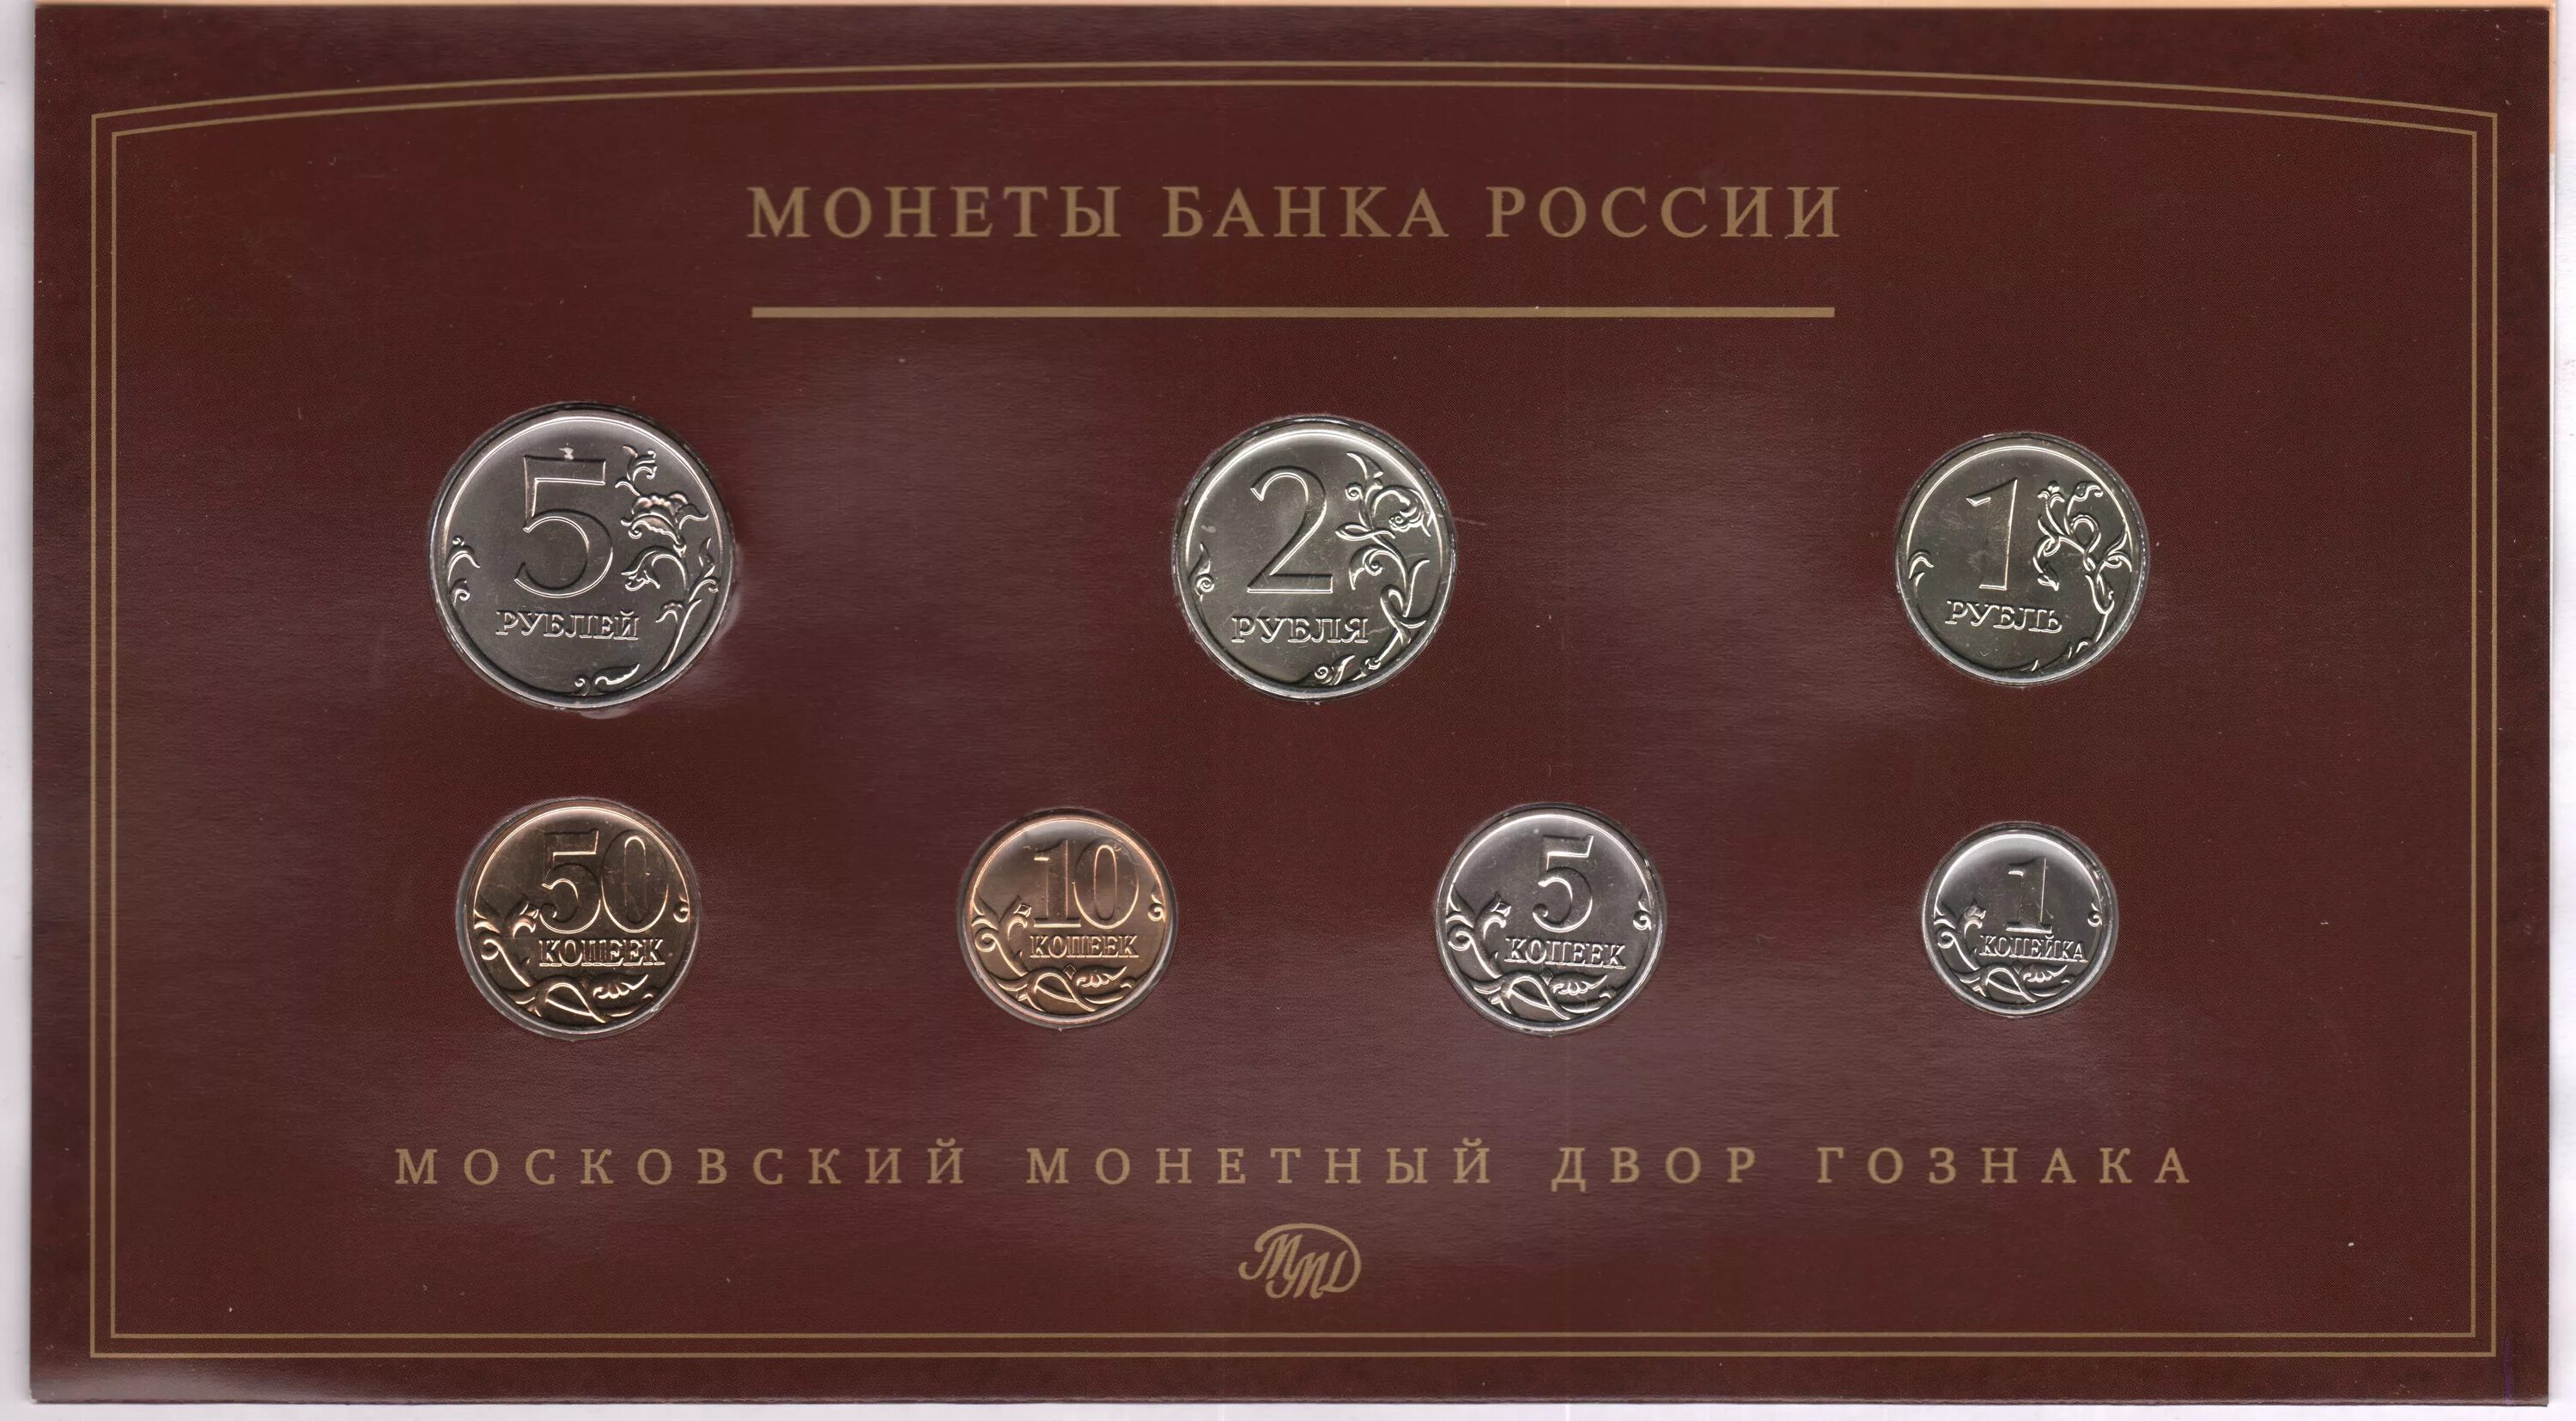 5 рублей набор. Монеты банка России. Монеты Императорского монетного двора. 1 2 5 Рублей набор монет. Набор монет монетный двор.